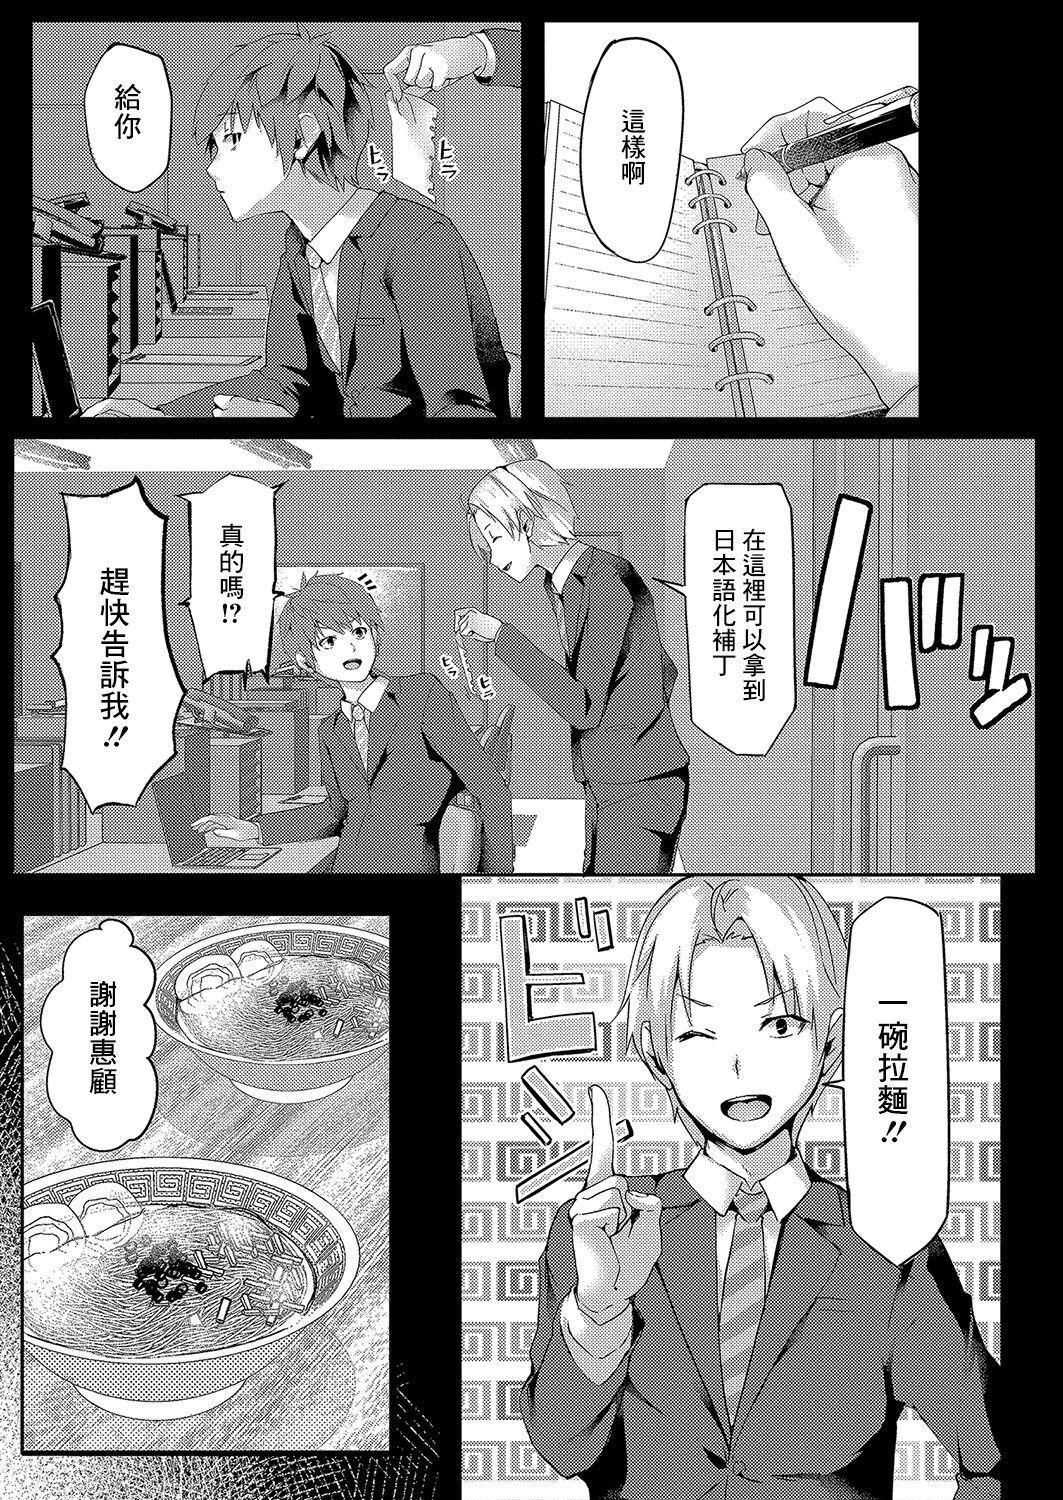 Petite Teenager 色欲パラノライア 第二話 Blow Job - Page 3